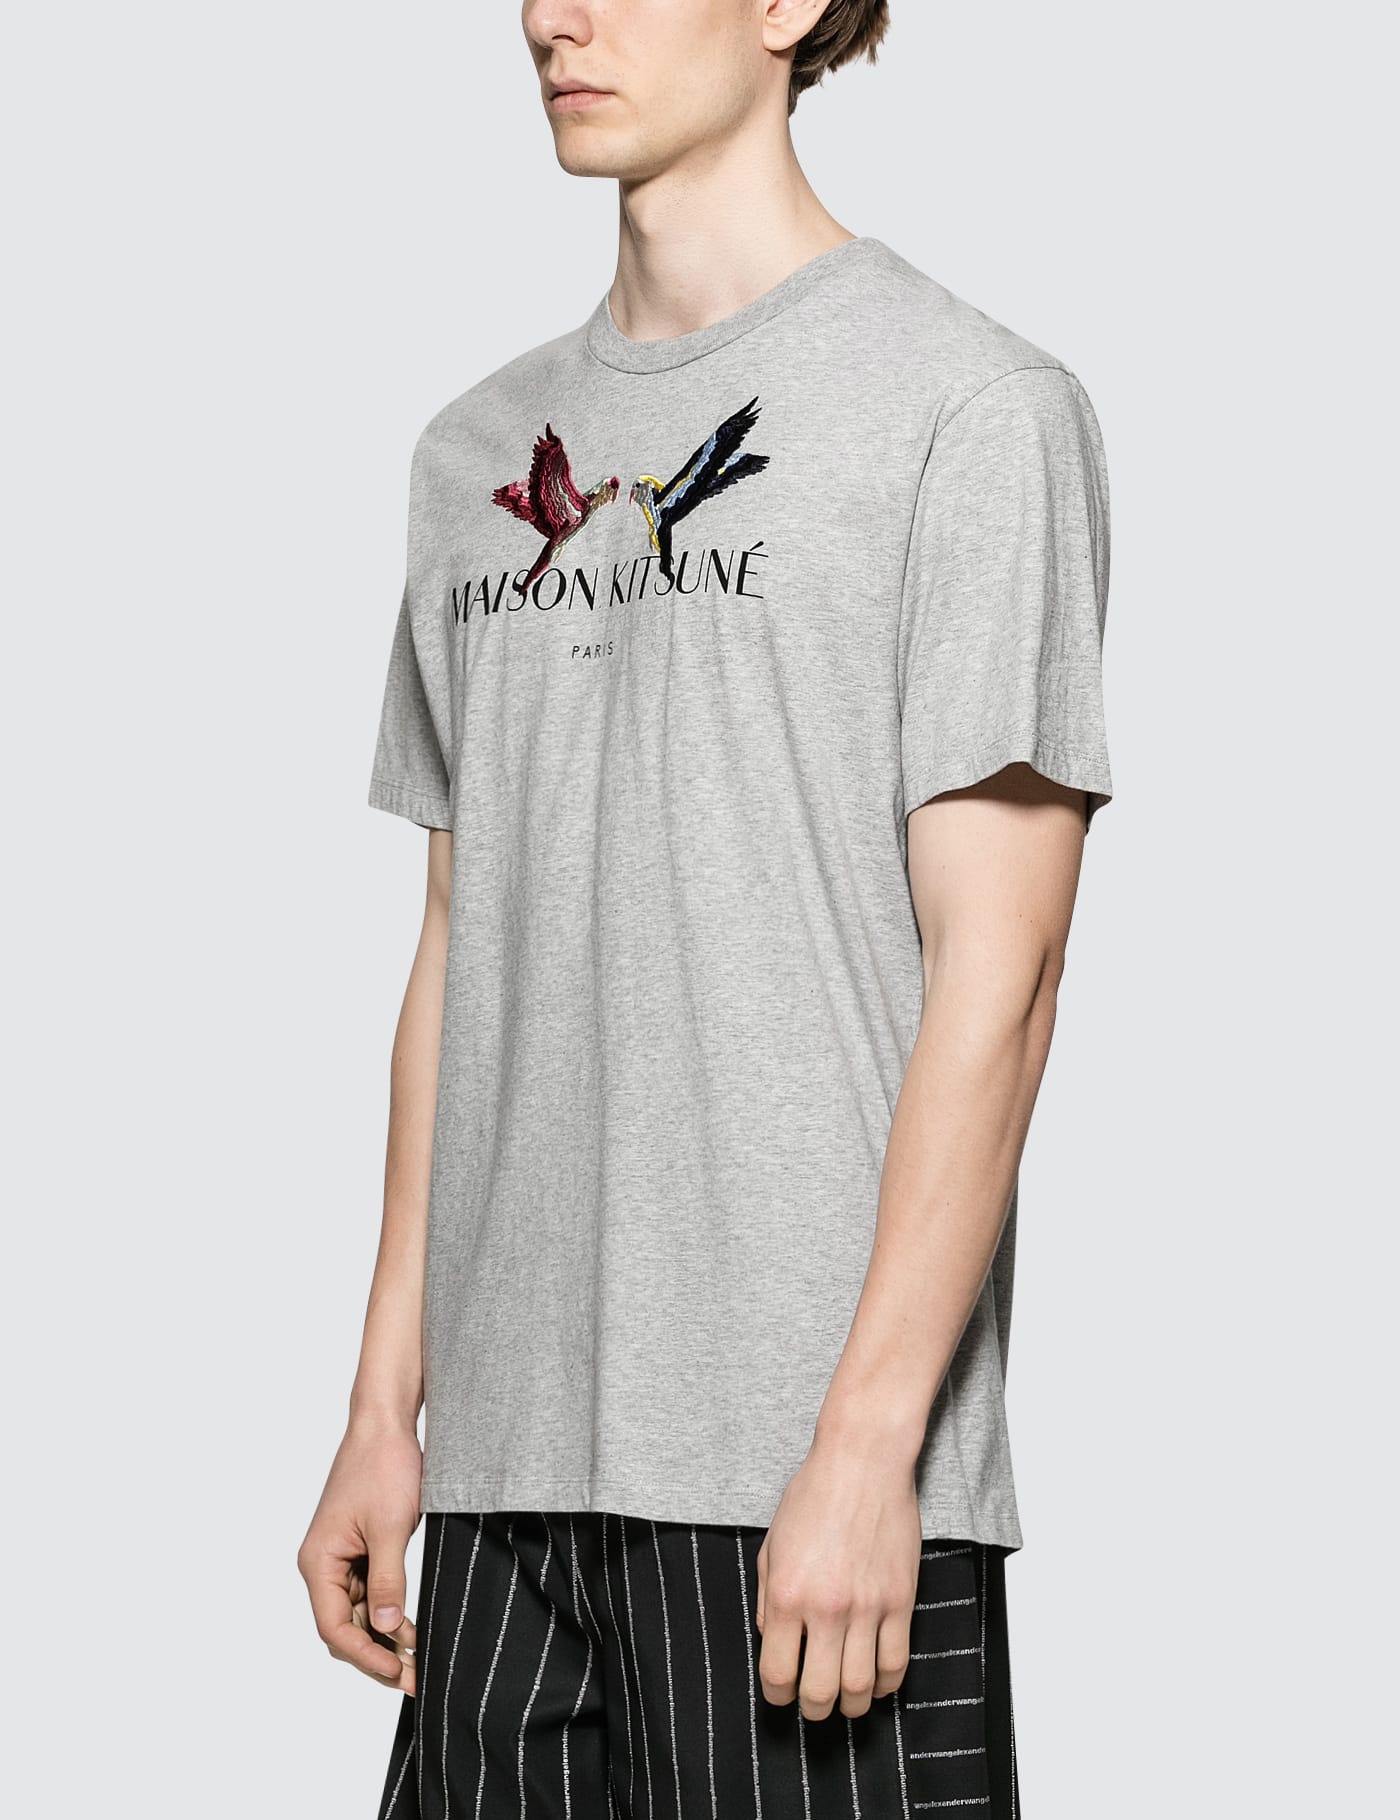 Maison Kitsuné - Lovebird S/S T-Shirt | HBX - ハイプビースト ...